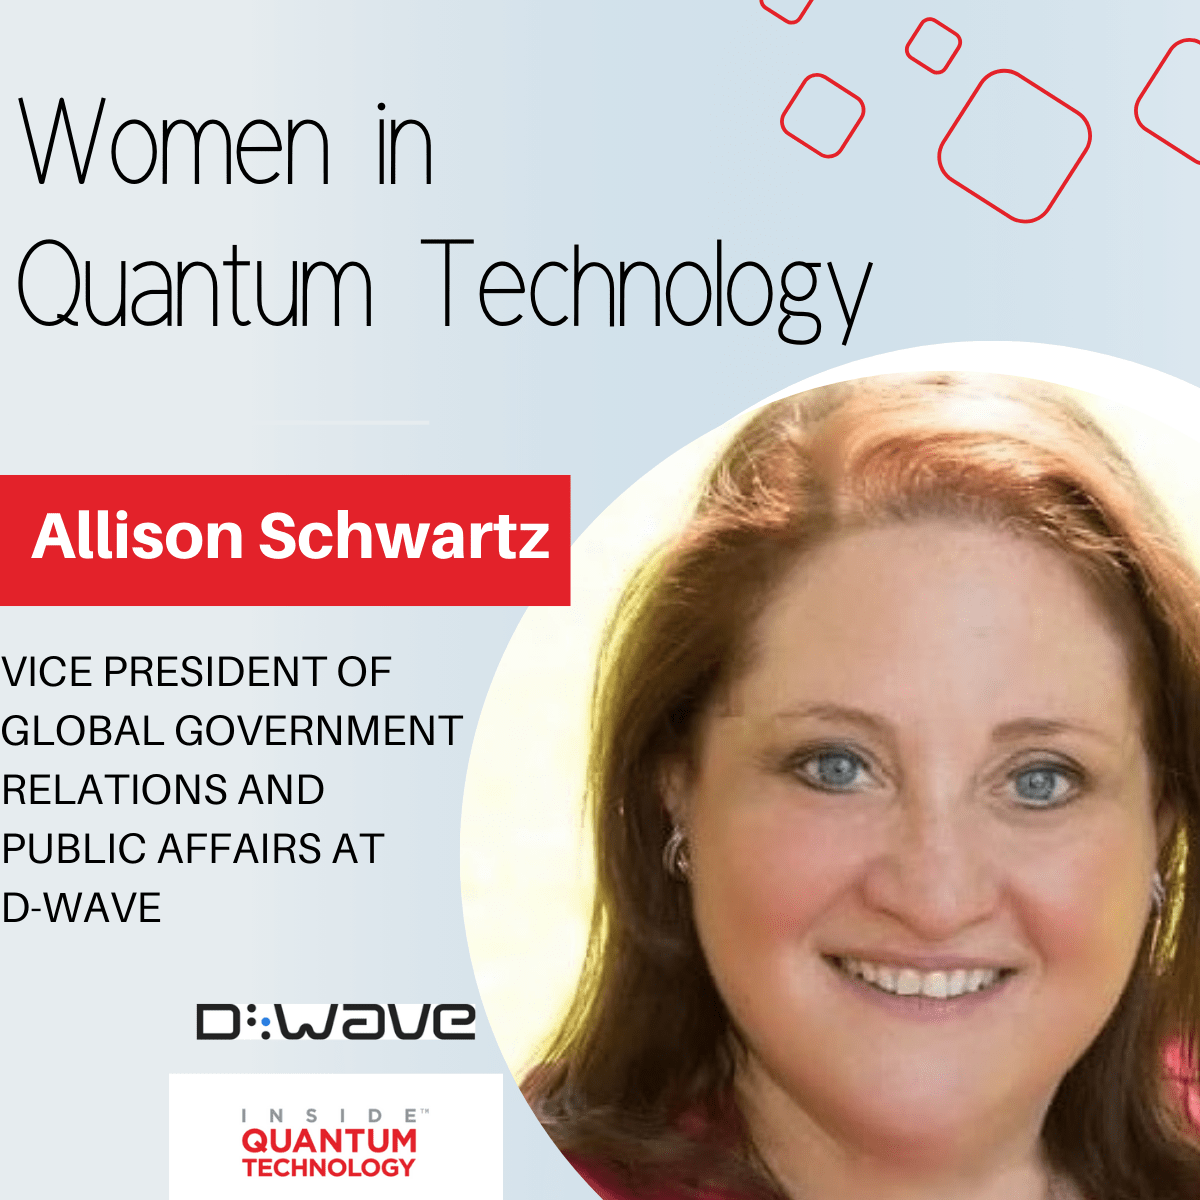 Women of Quantum Technology: Allison Schwartz D-Wavesta - Inside Quantum Technology